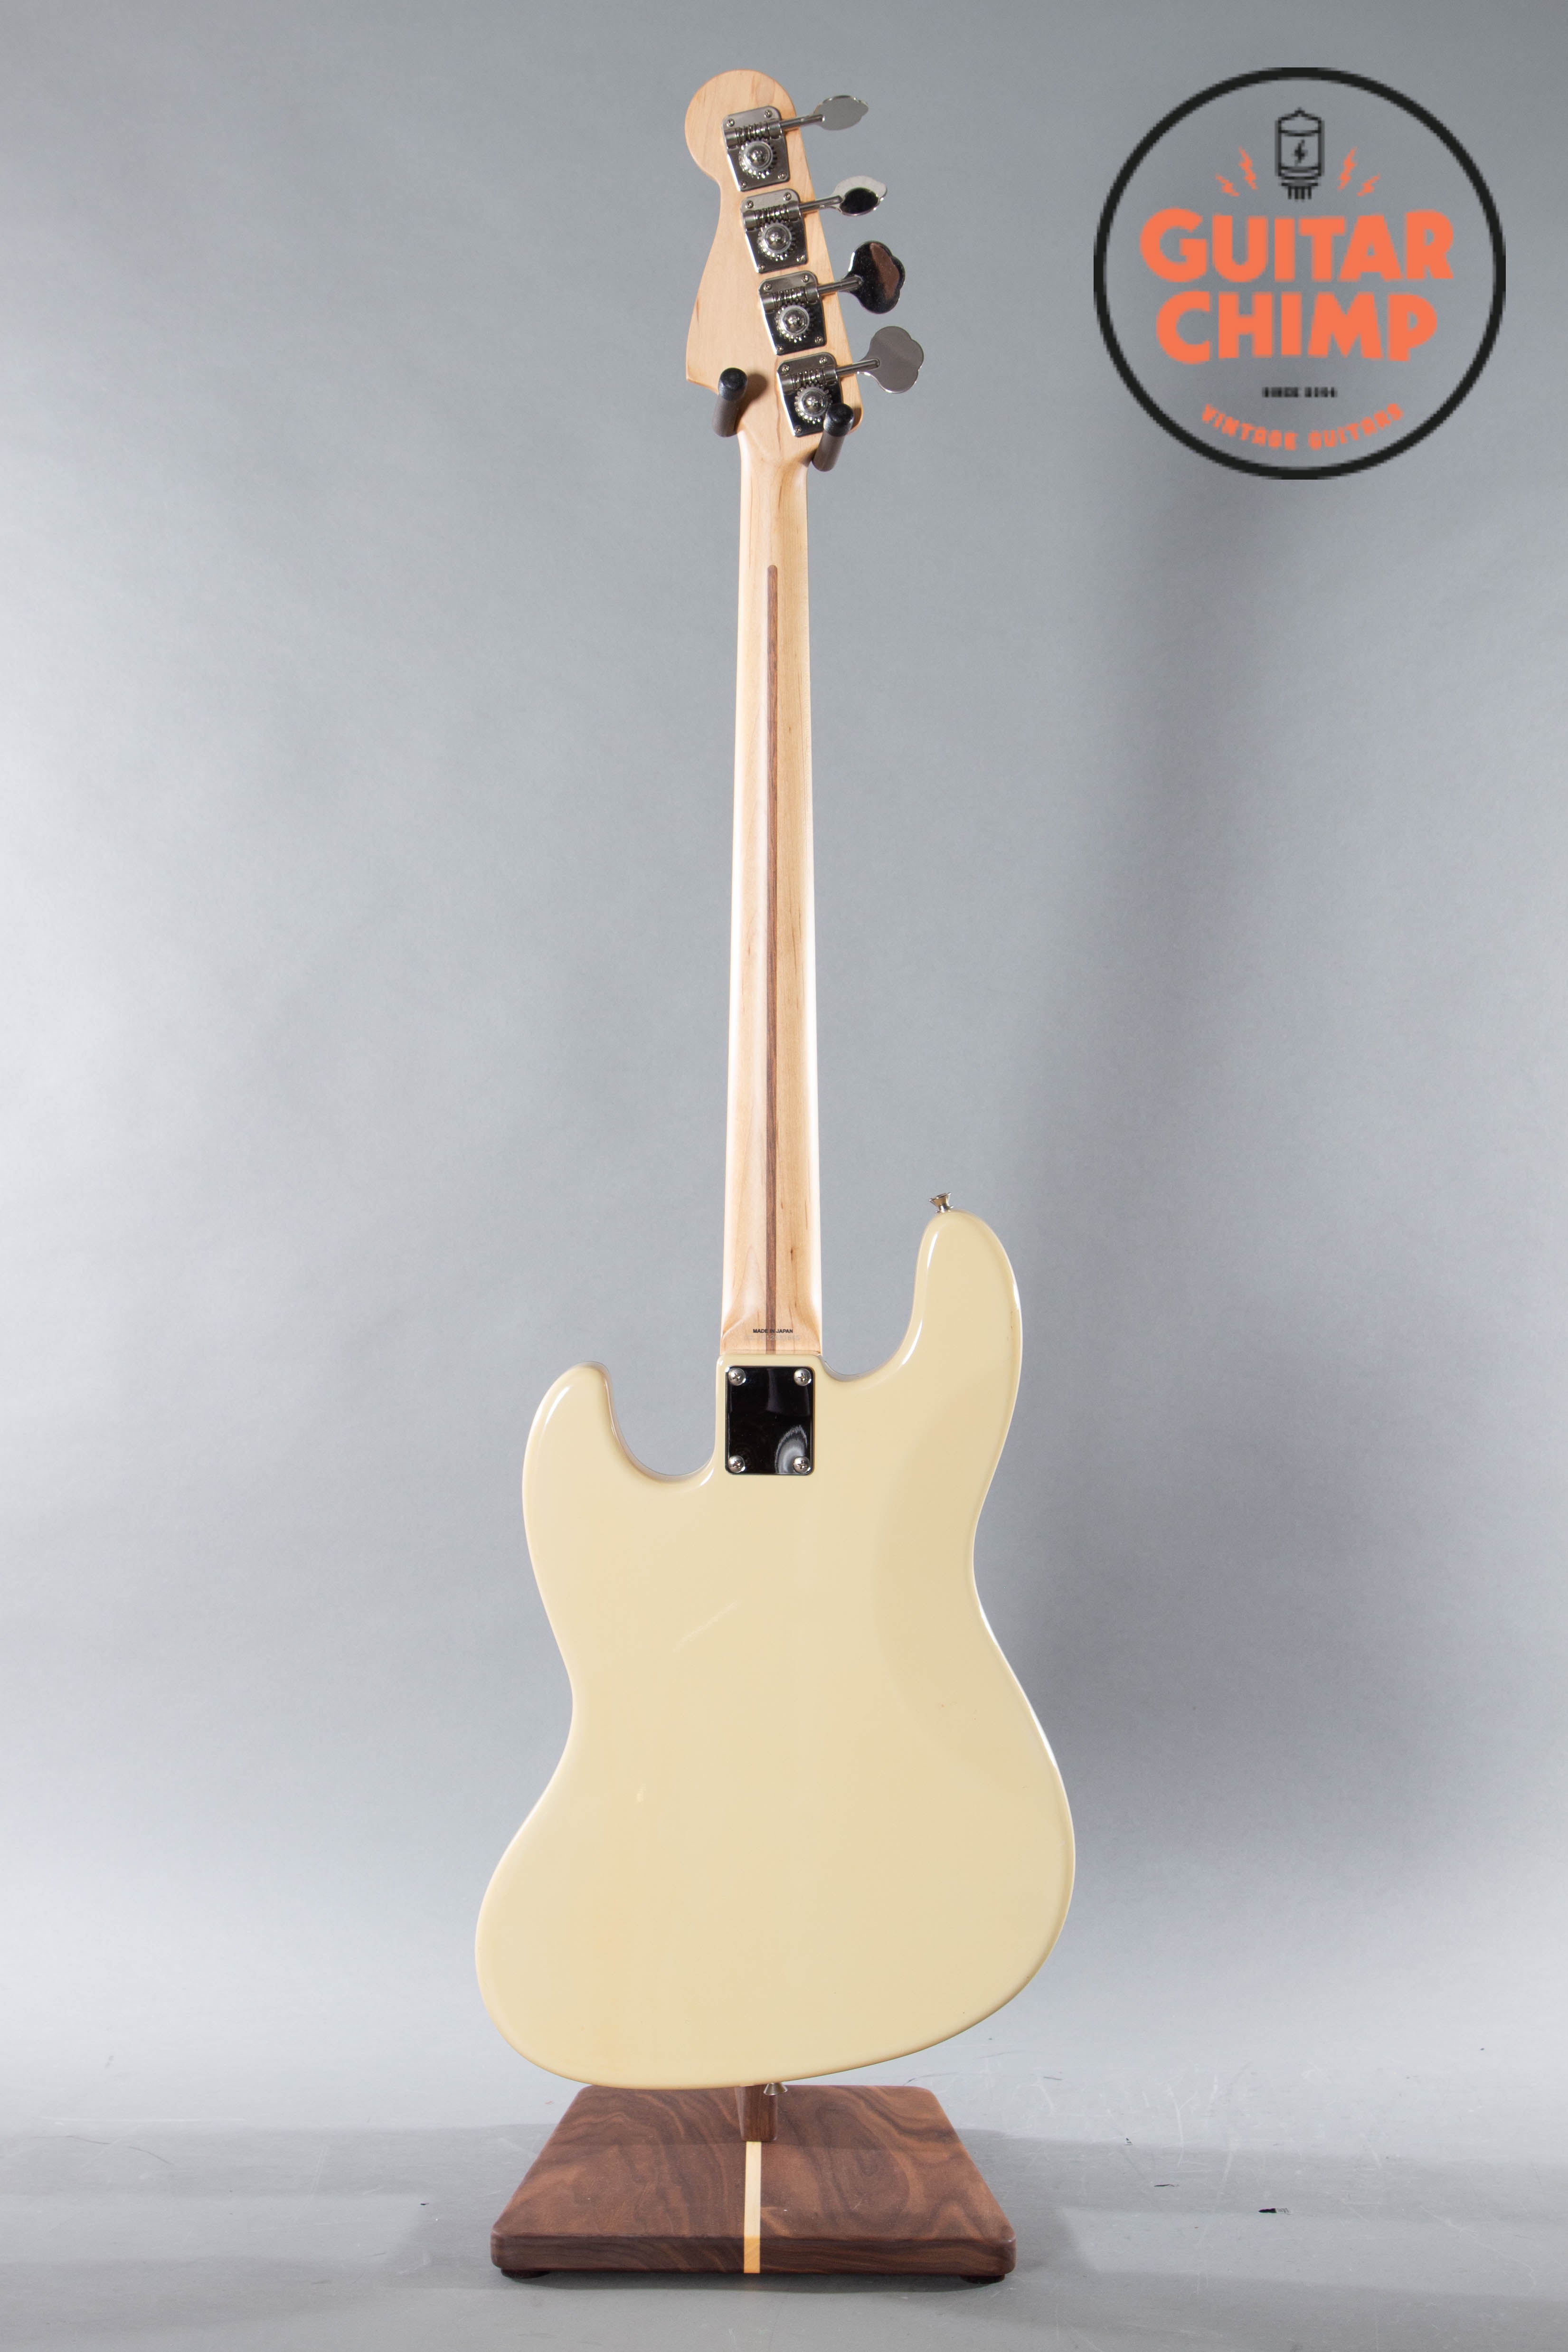 2012 Fender Japan AJB Aerodyne Jazz Bass Vintage White | Guitar Chimp